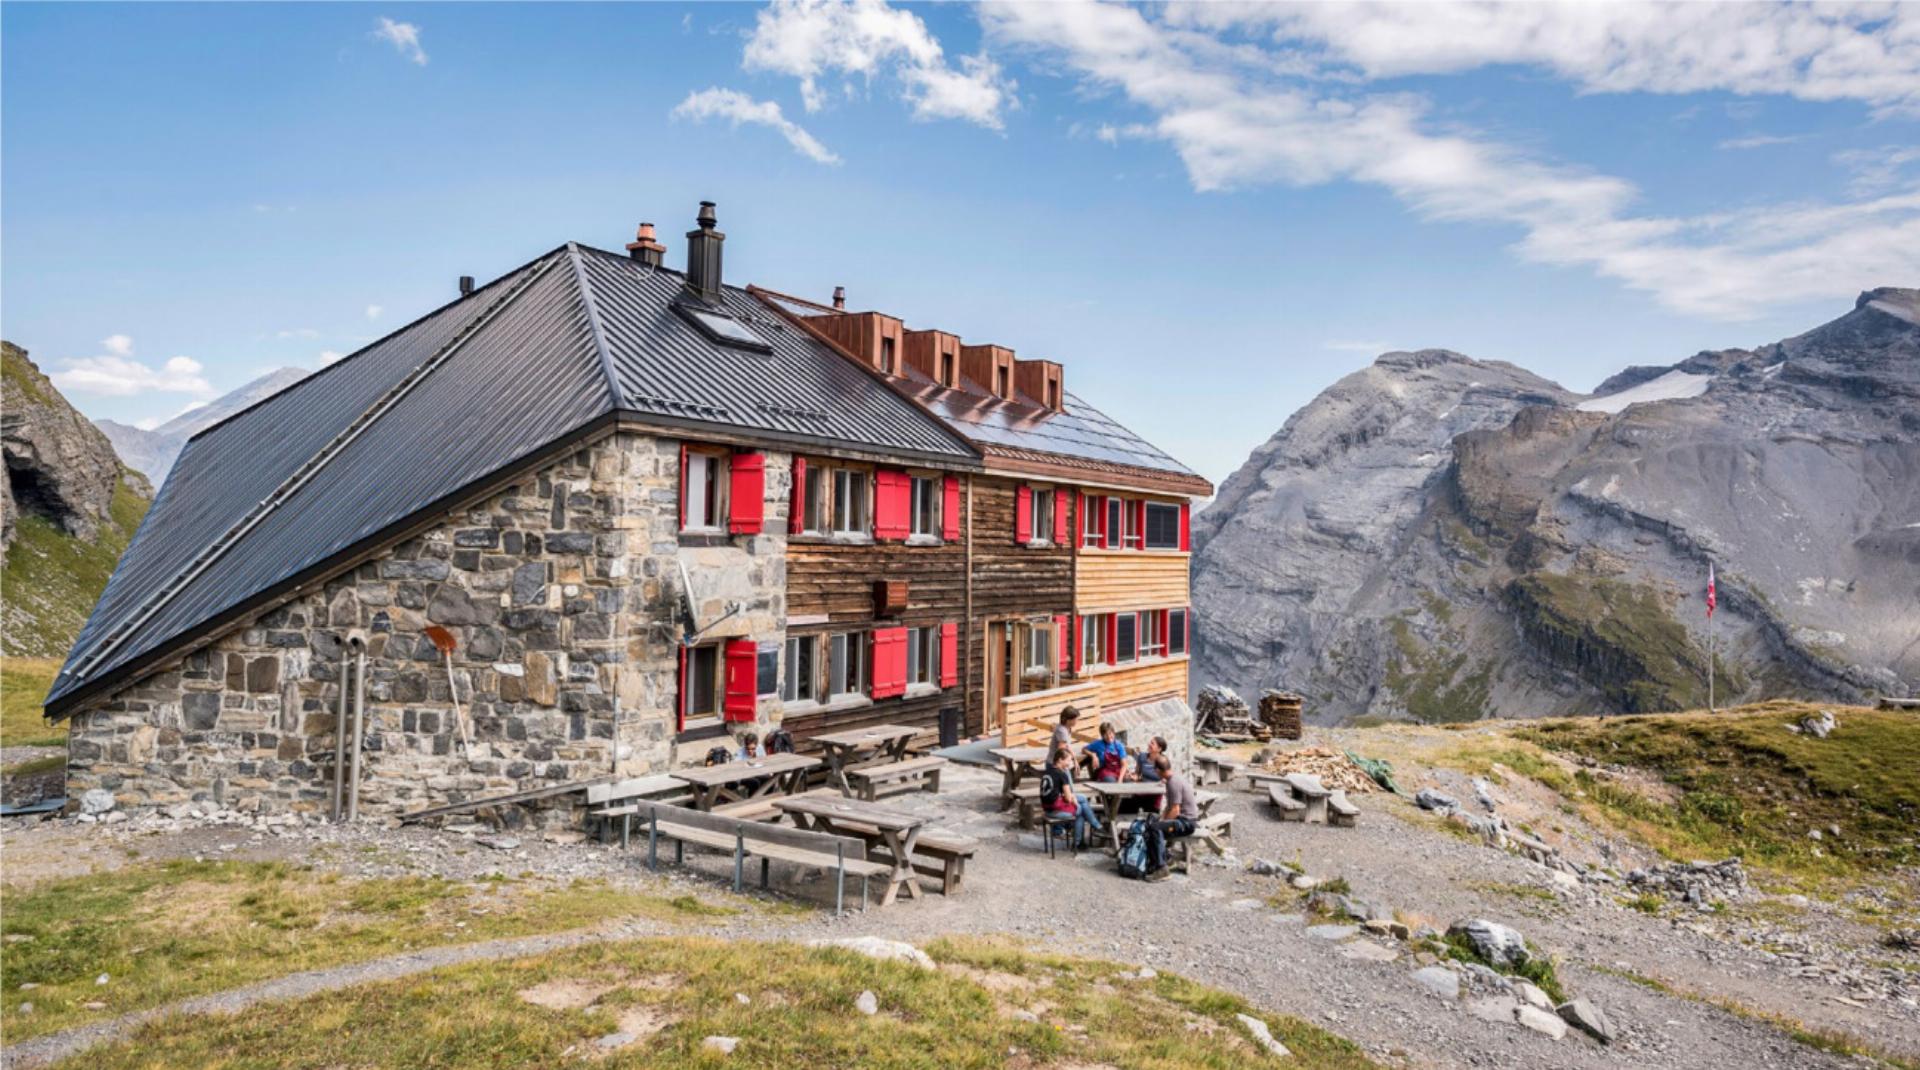 Keine andere SAC-Hütte in der Schweiz hatte so viele Übernachtungsgäste wie die Lämmerenhütte. BILD: ZVG / DAVIDSCHWEIZER.CH